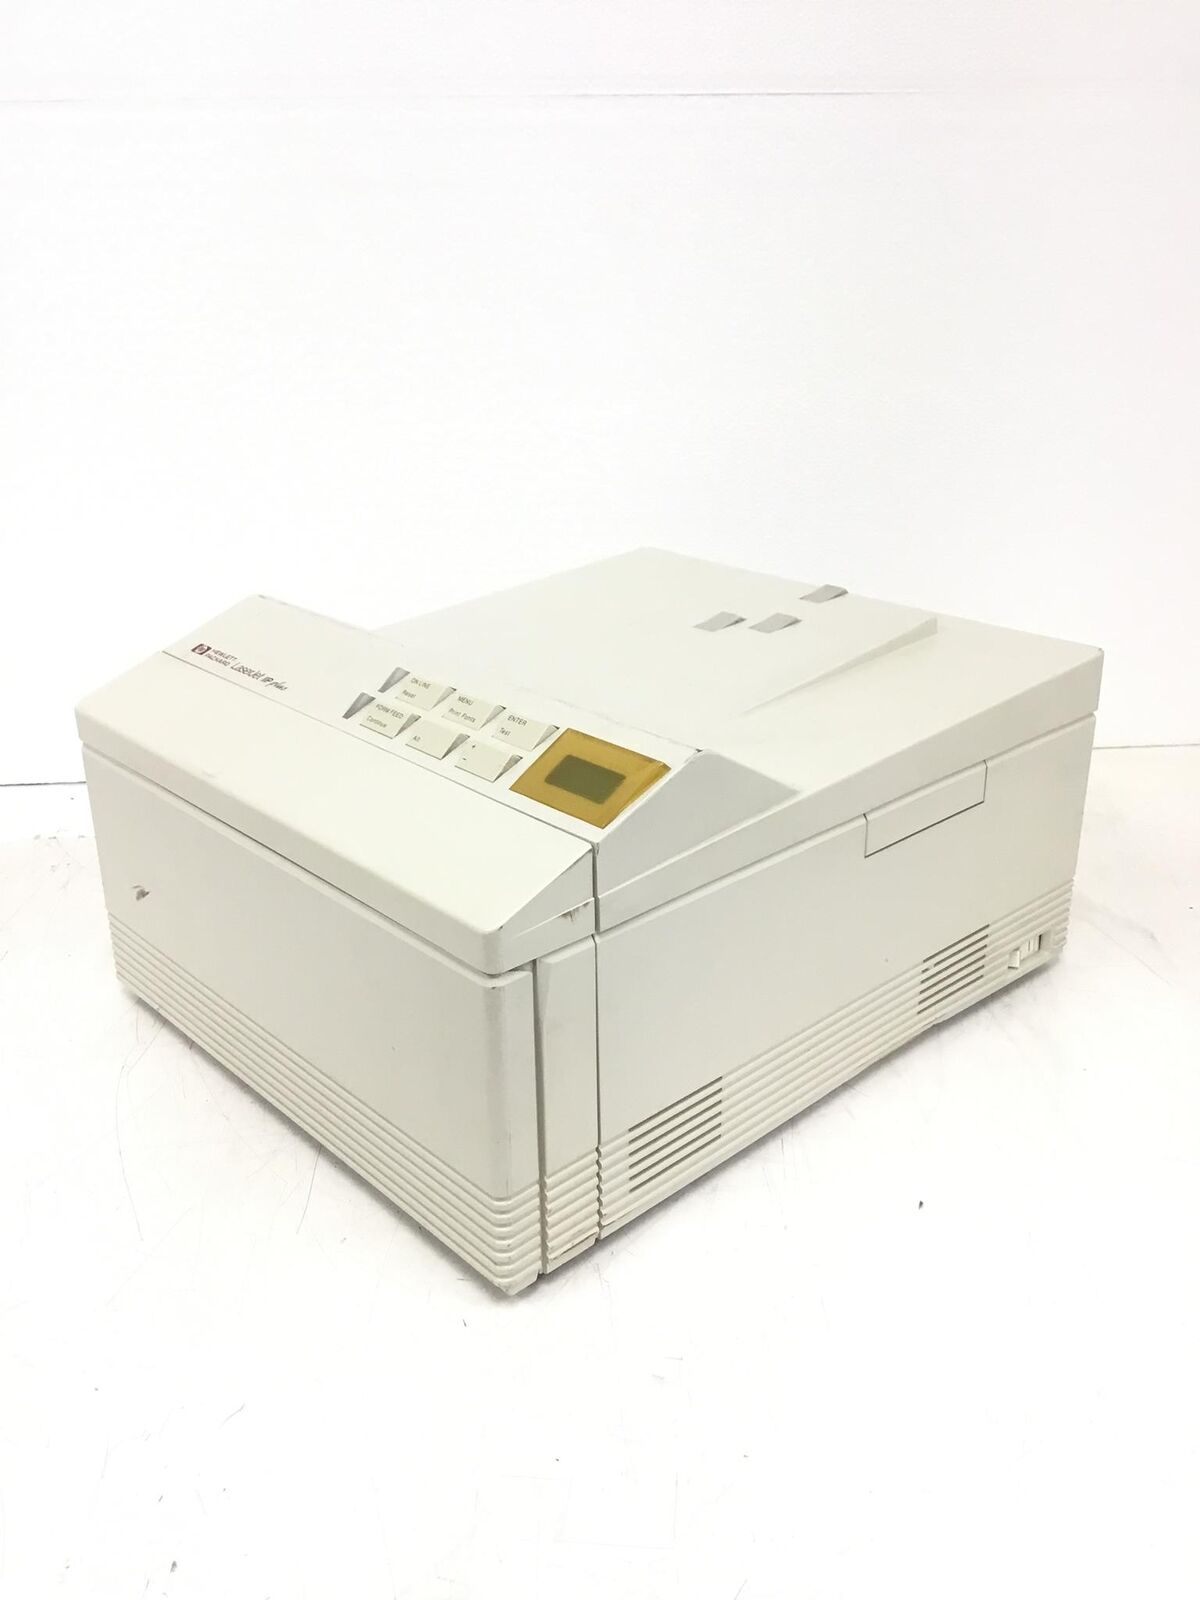 RARE 1991 Vintage HP LaserJet IIP Plus Laser Printer NO TONER C2007A, Papaer Jam